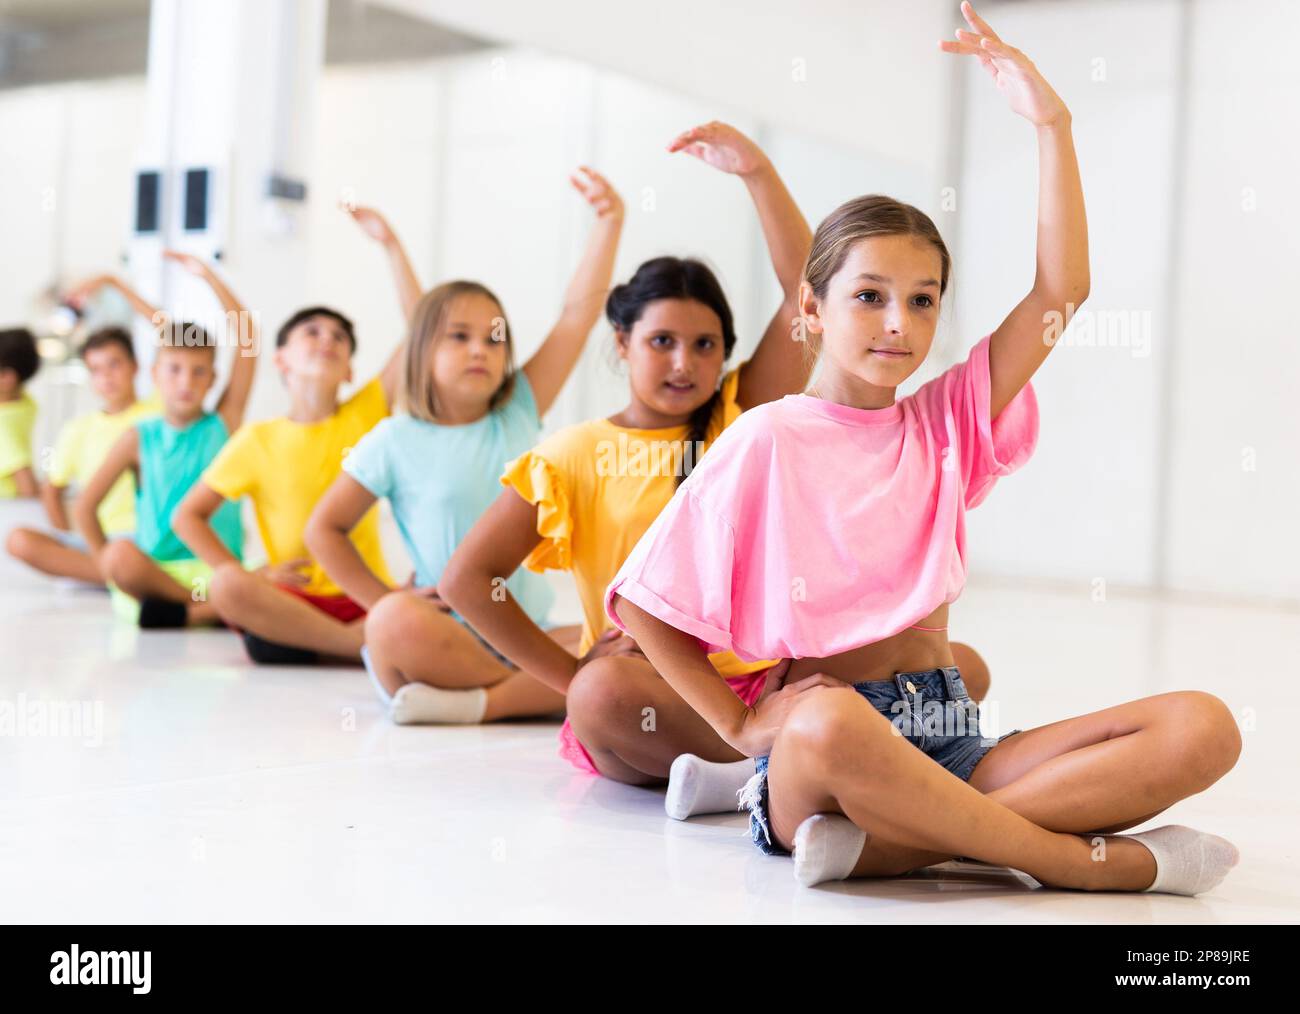 Gruppe emotionaler Kinder, die im Tanzstudio Yoga machen Stockfoto